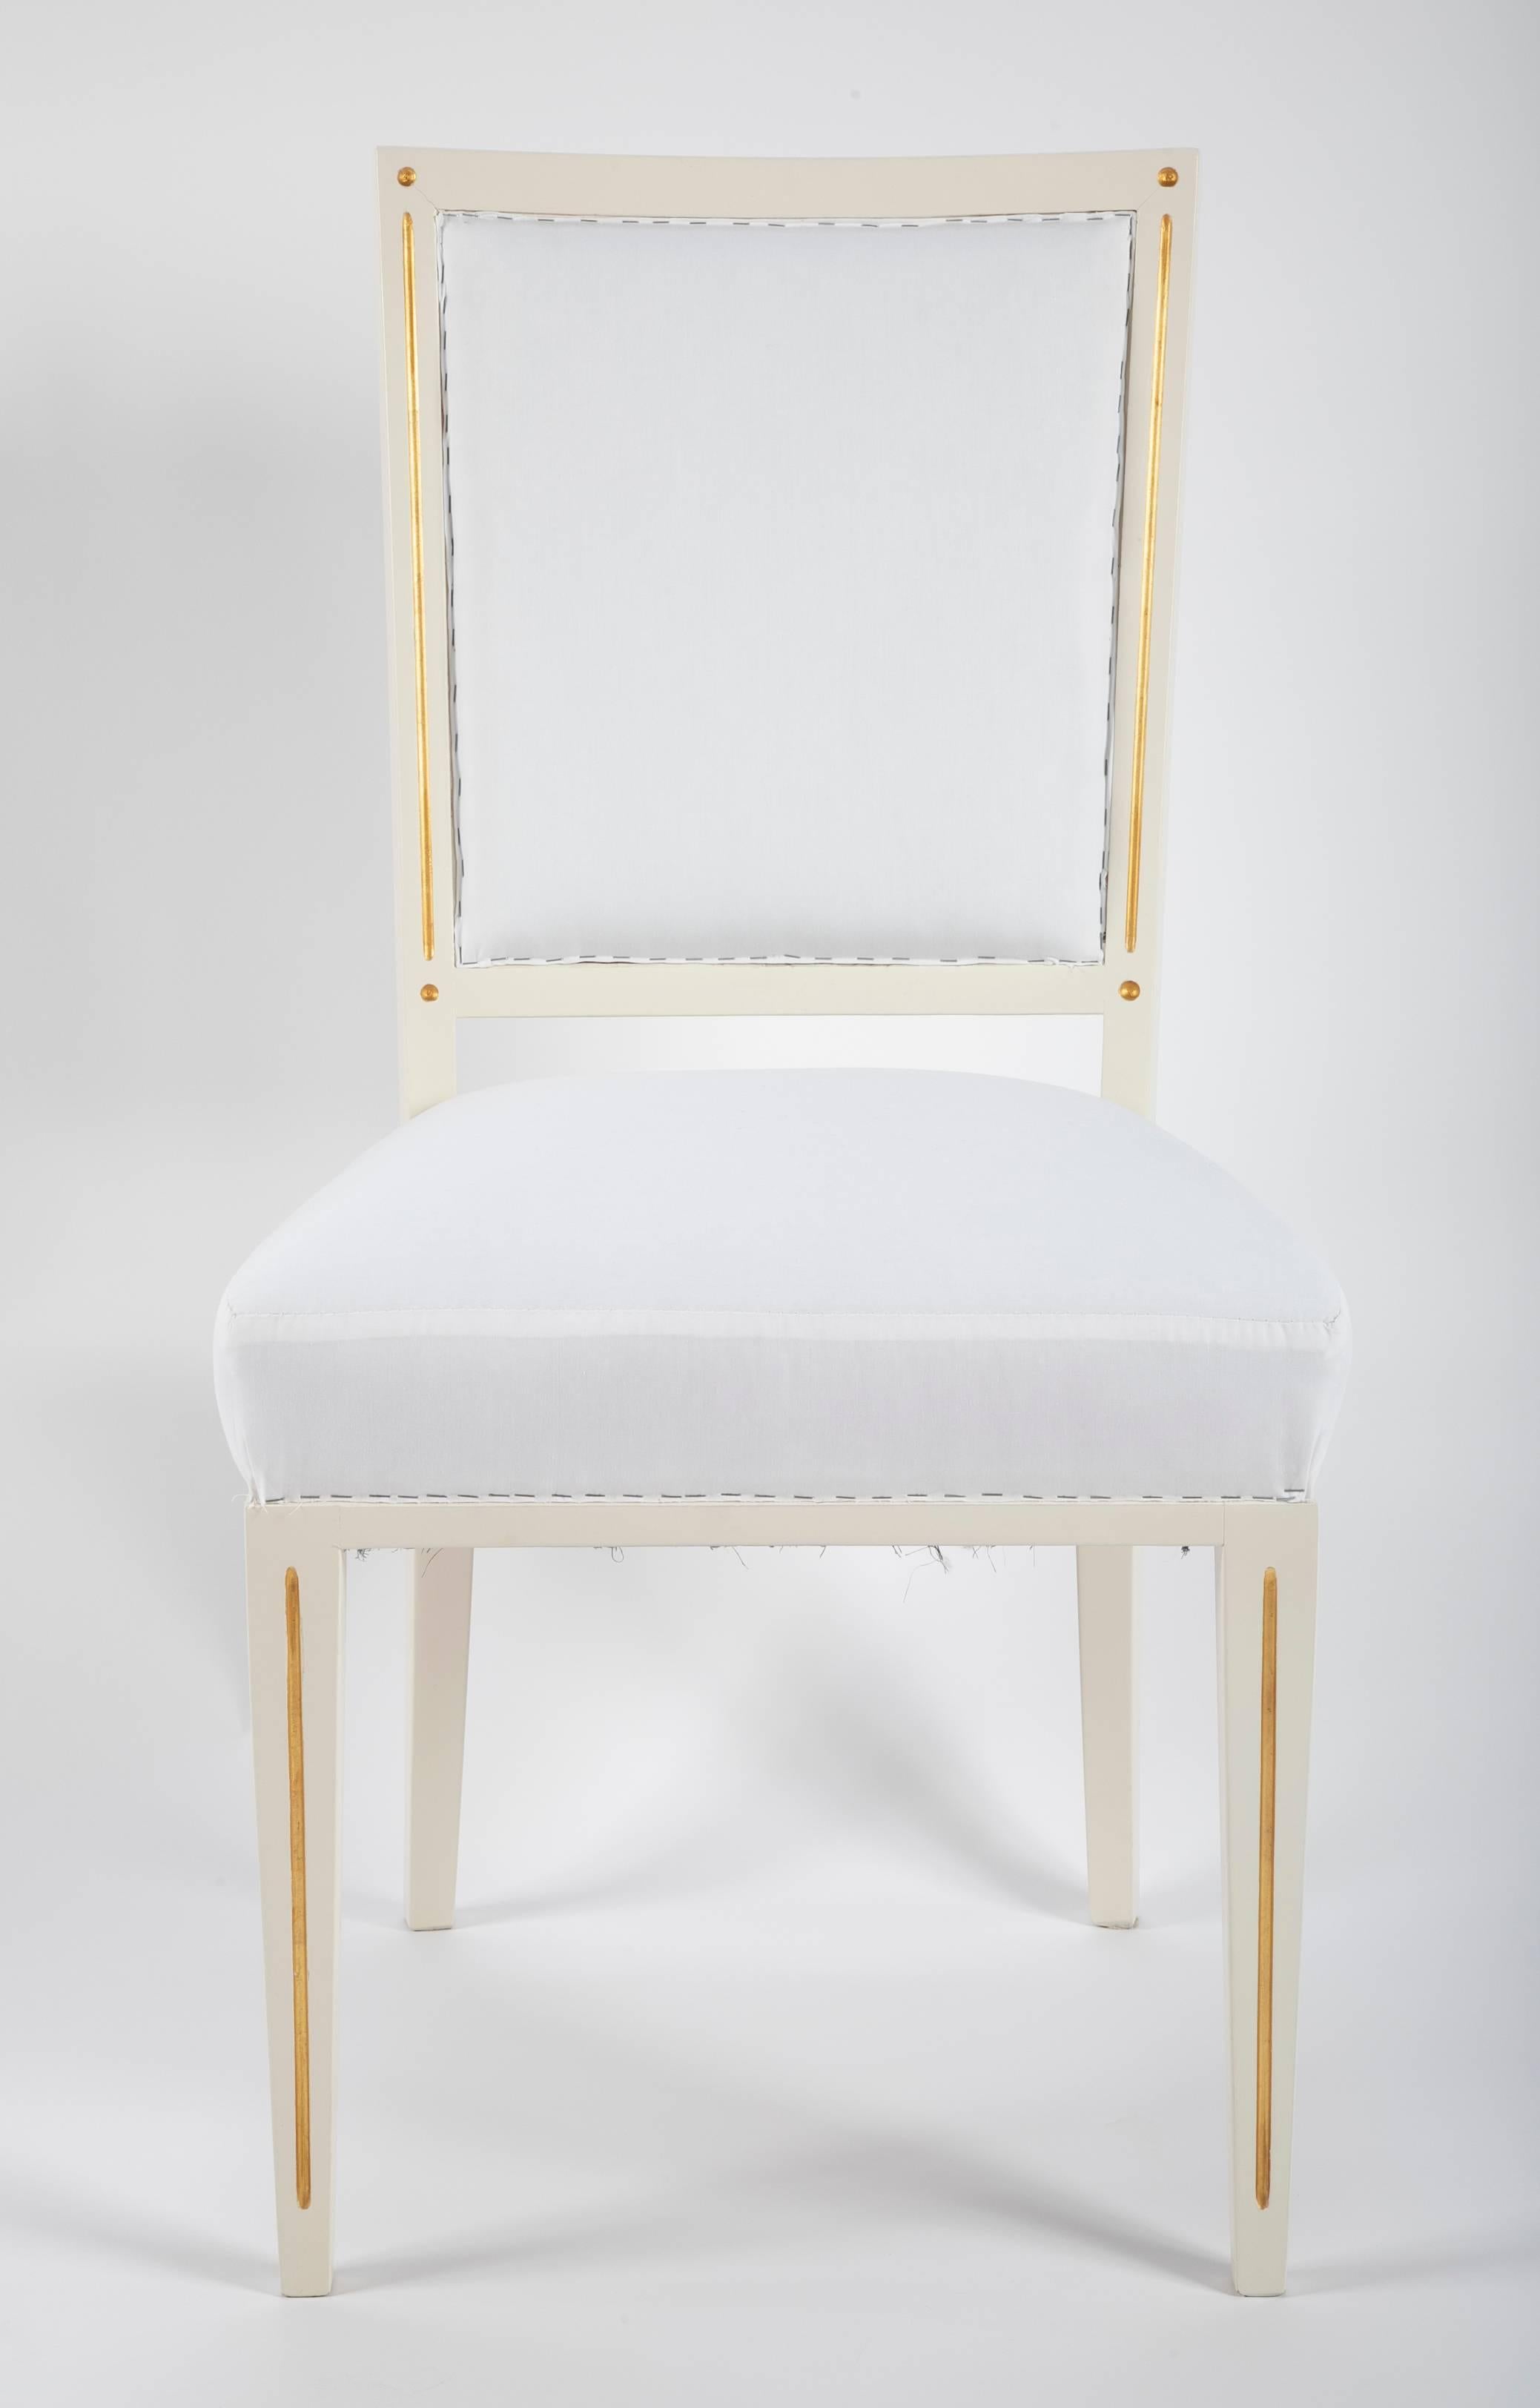 Ein großer Satz Esszimmerstühle, entworfen von Carl-Heinz Schwennicke 1958 für das Schloss Bellevue in Berlin. Alle Stühle wurden aufgearbeitet und mit Musselin-Stoff gepolstert. 

Der Einzelpreis liegt bei 1.800 $ pro Stuhl. 